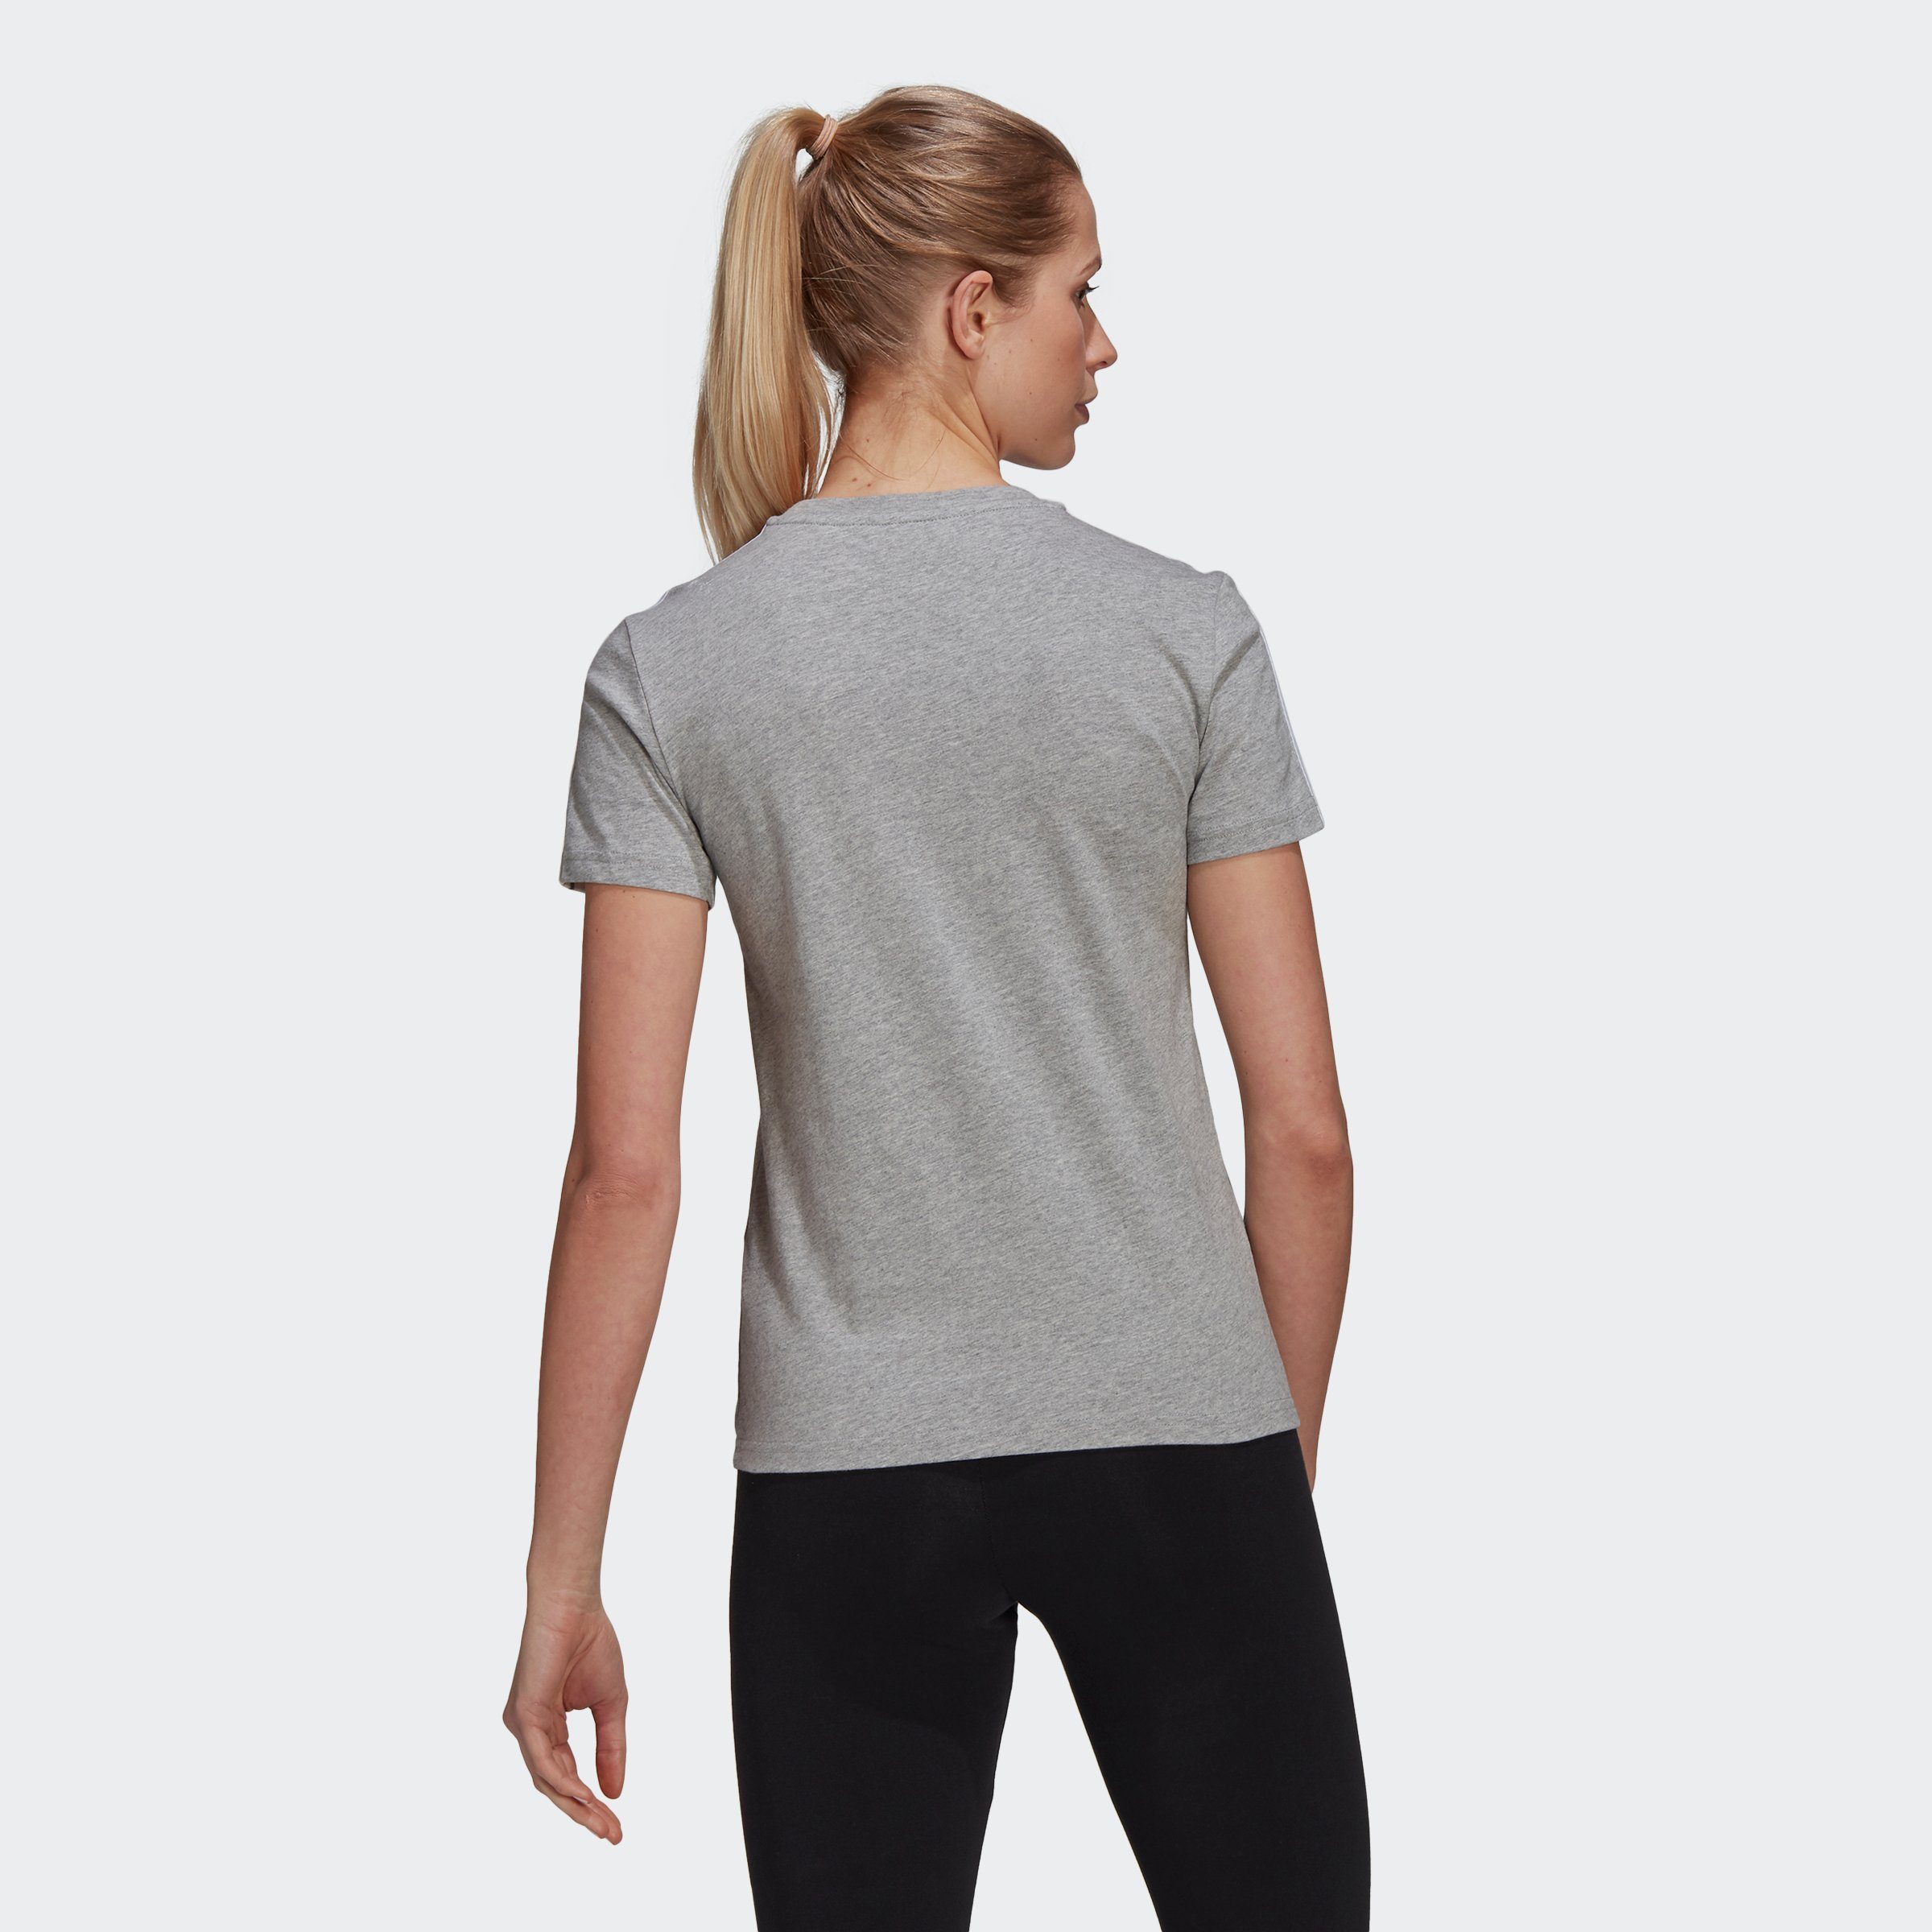 LOUNGEWEAR 3-STREIFEN / ESSENTIALS Sportswear SLIM Grey Heather Medium T-Shirt White adidas